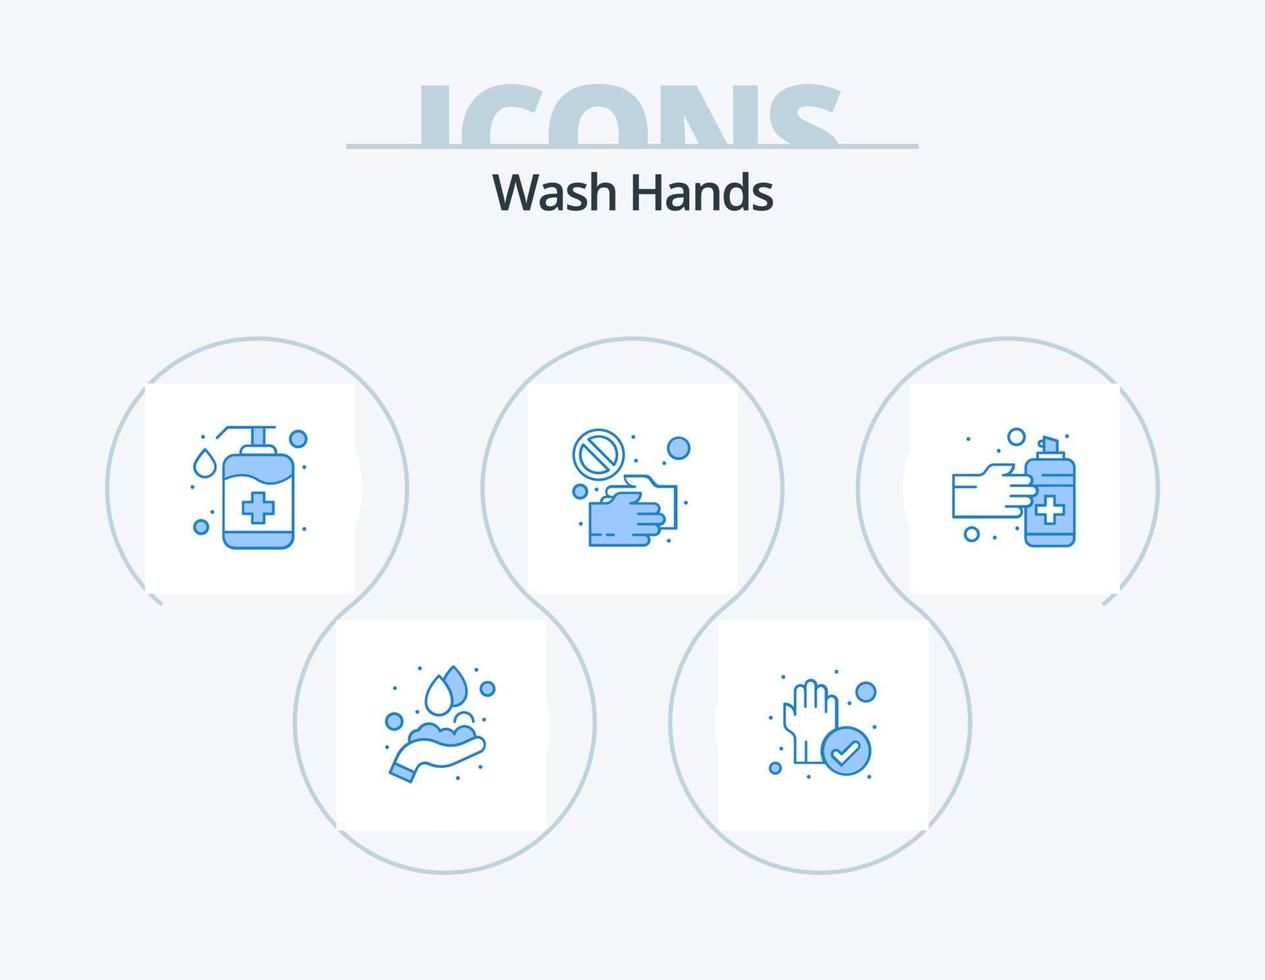 tvätta händer blå ikon packa 5 ikon design. skaka hand. Nej. flaska. hand. tvätta vektor